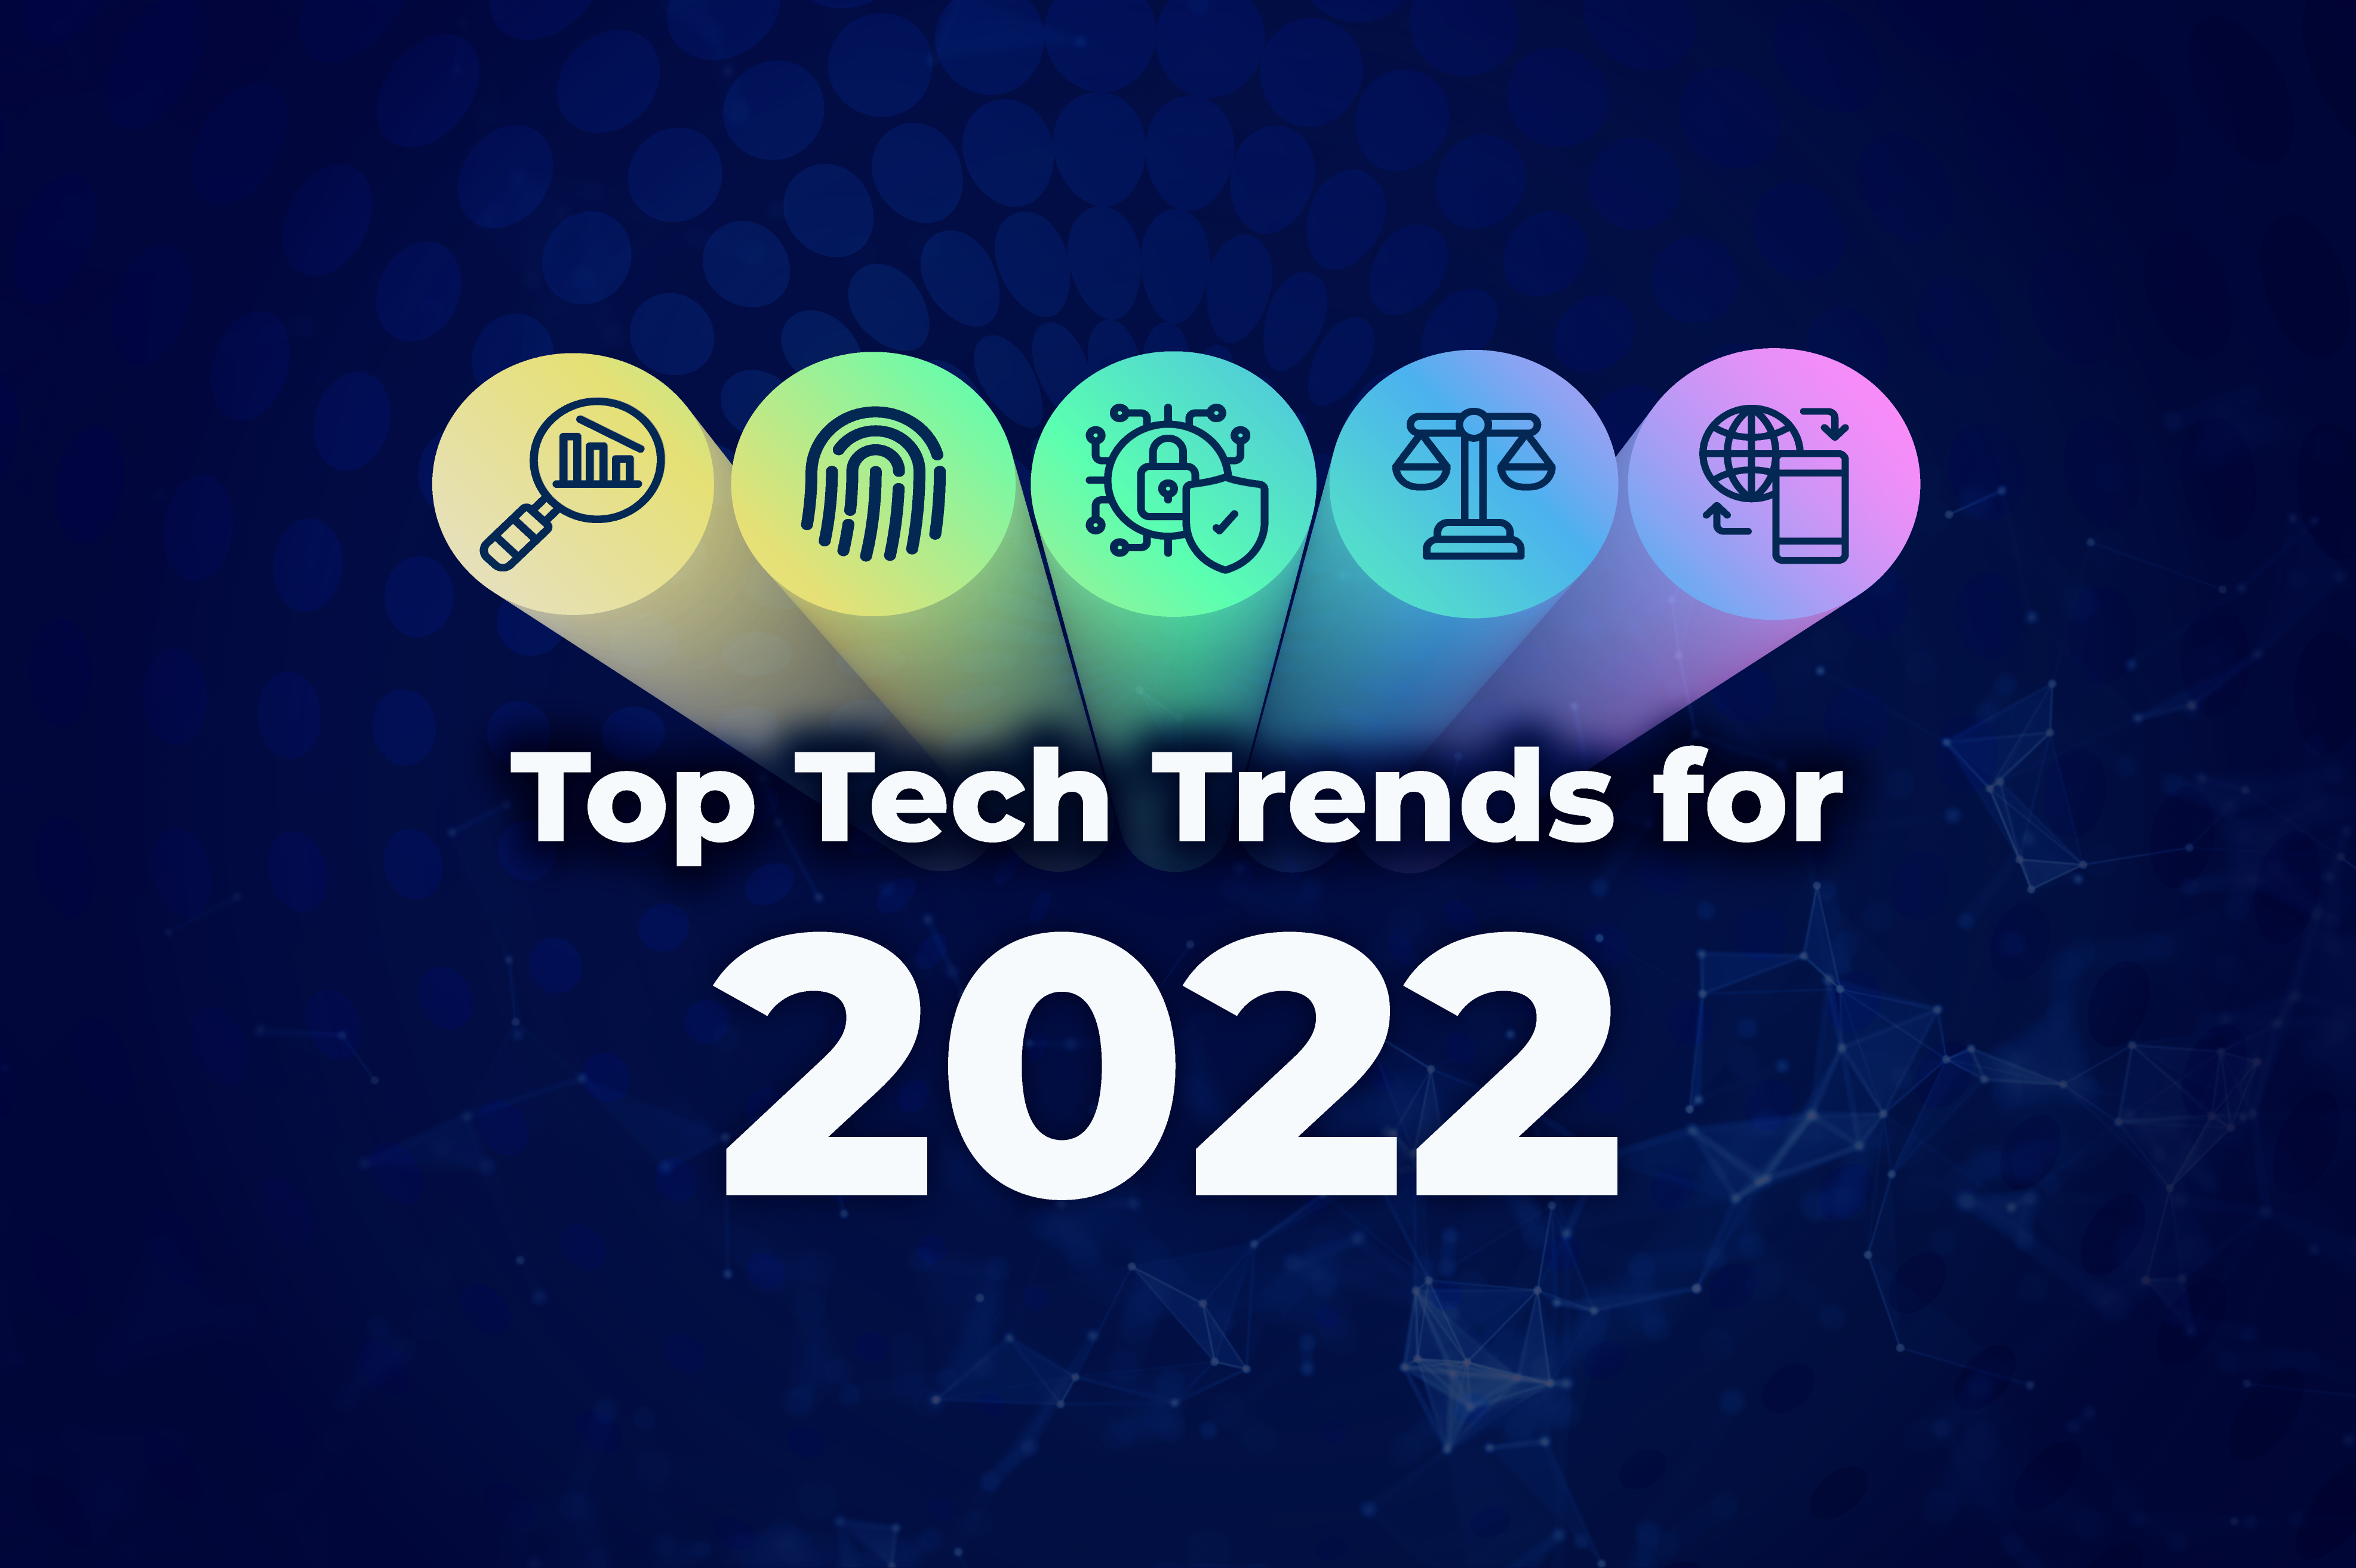 Top tech trends 2022